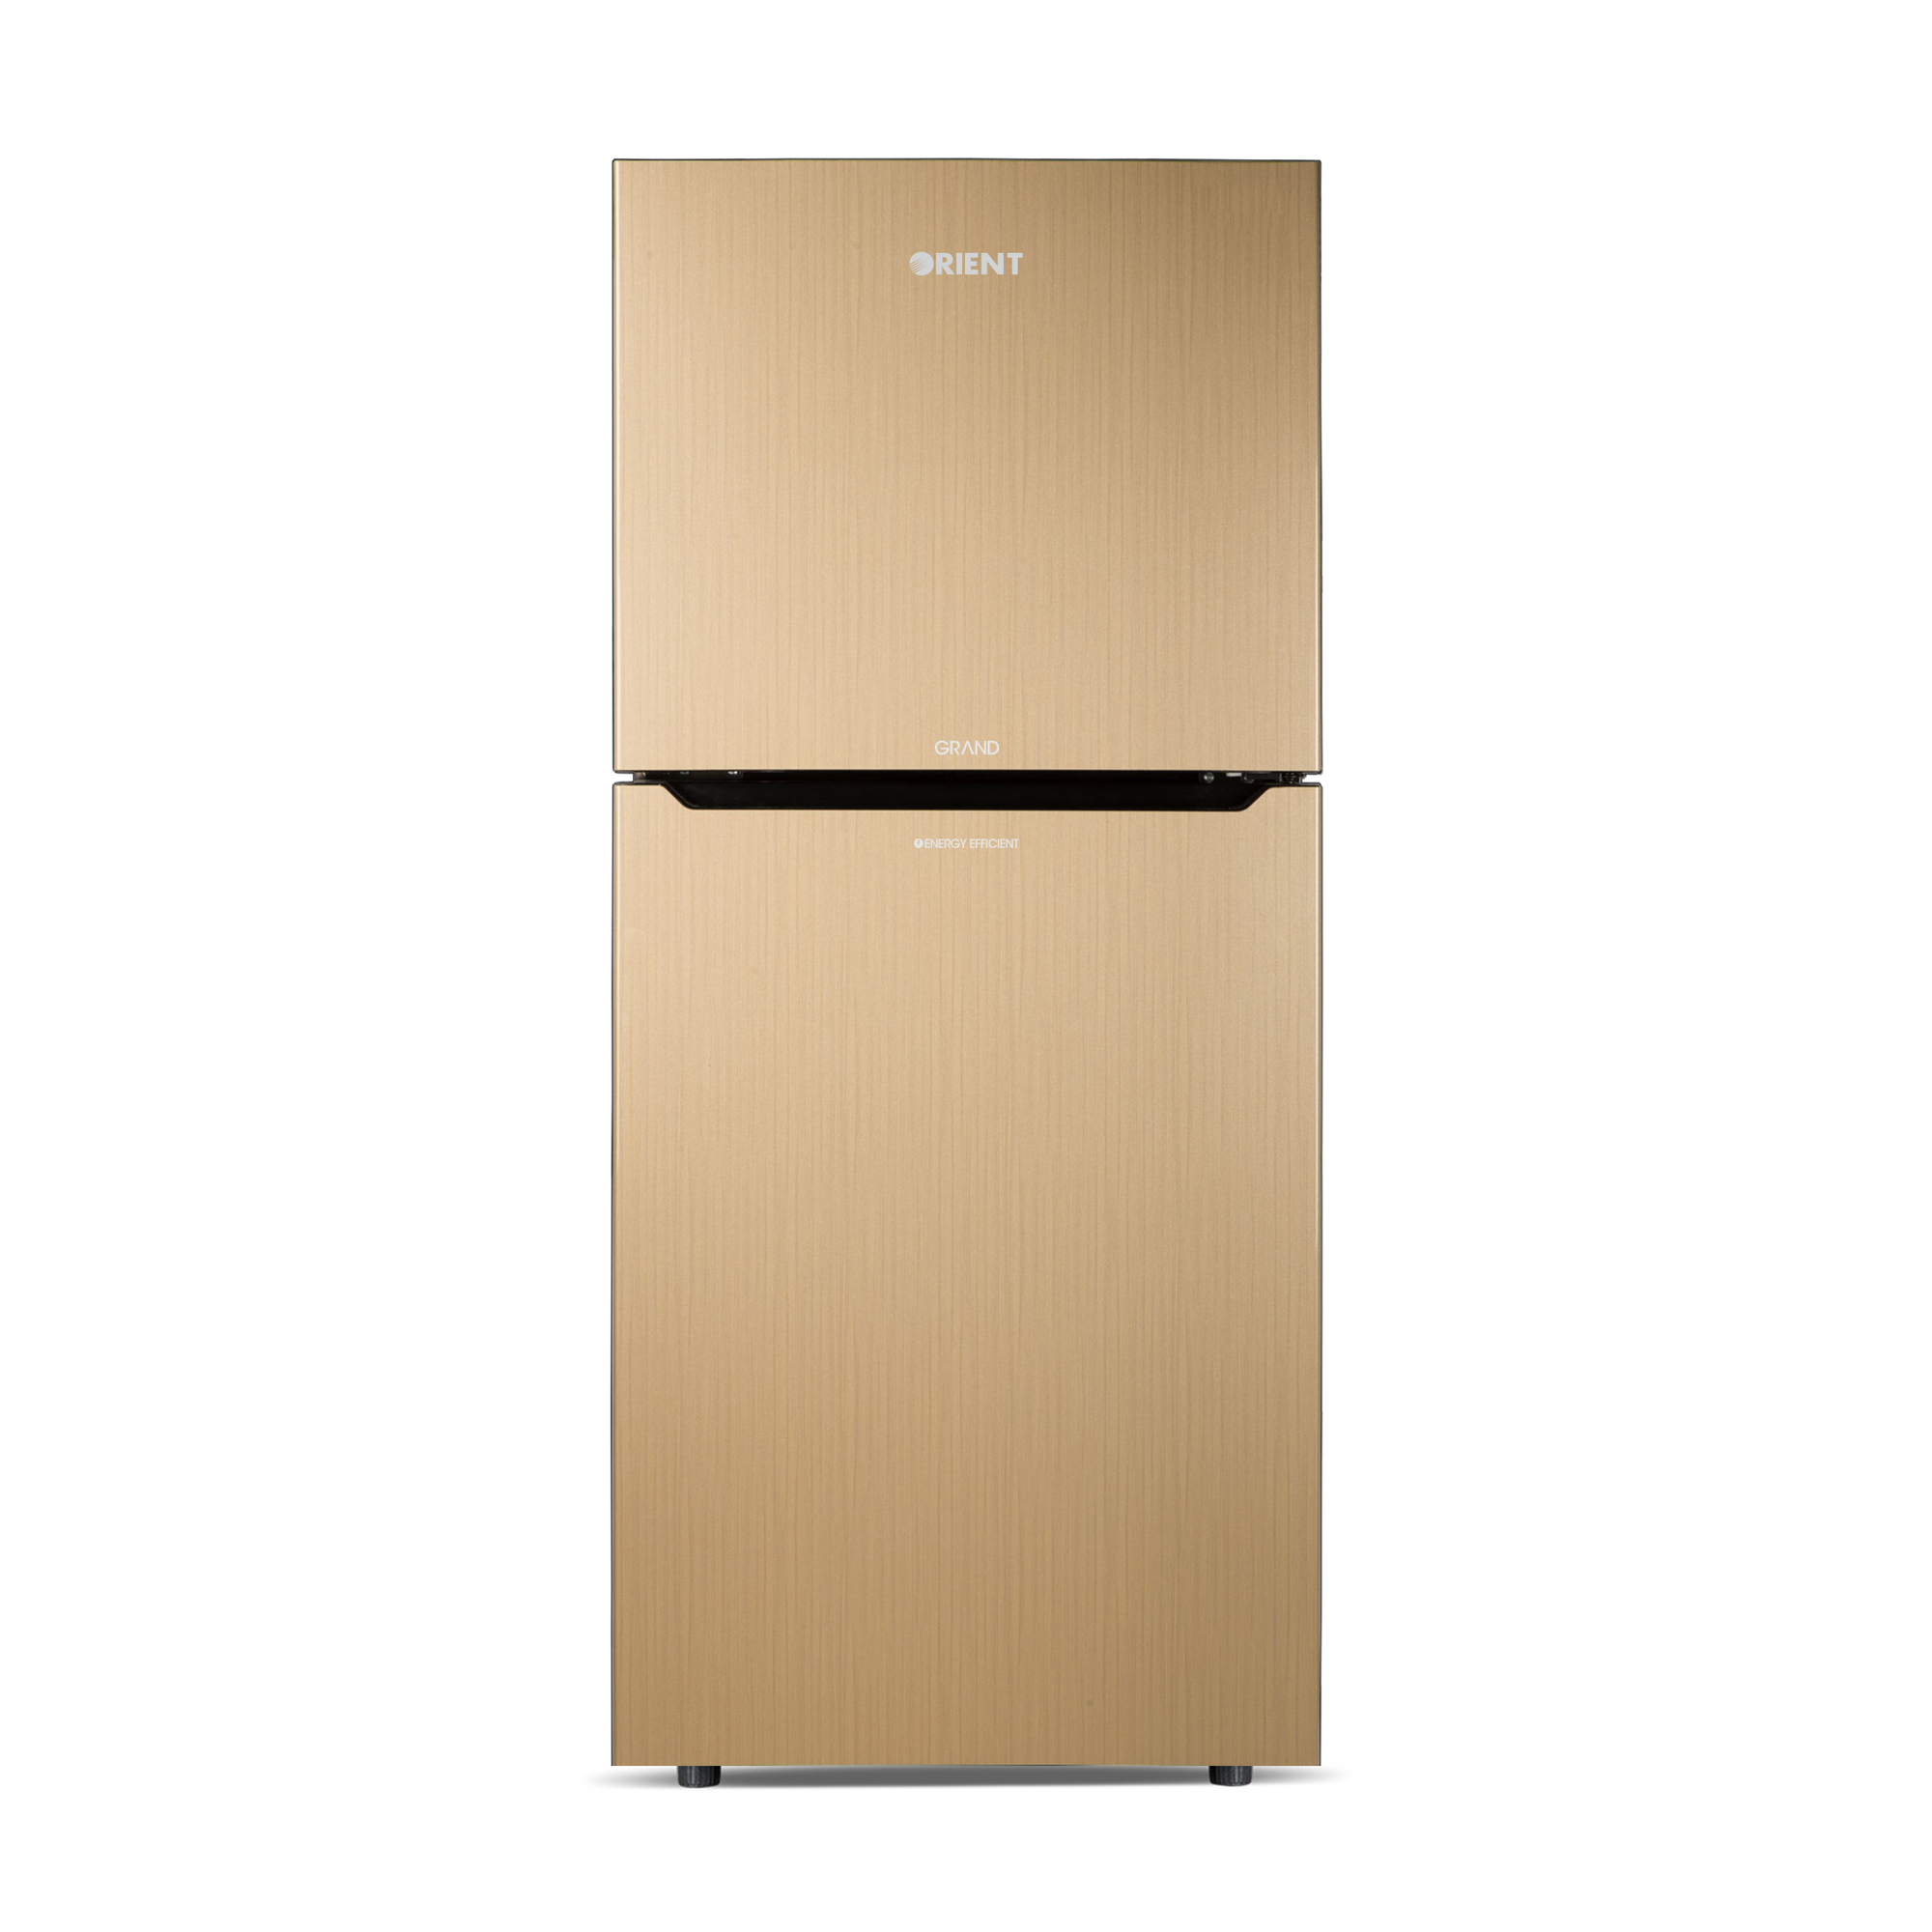 Orient Refrigerator Double Door - 285 Grand VCM